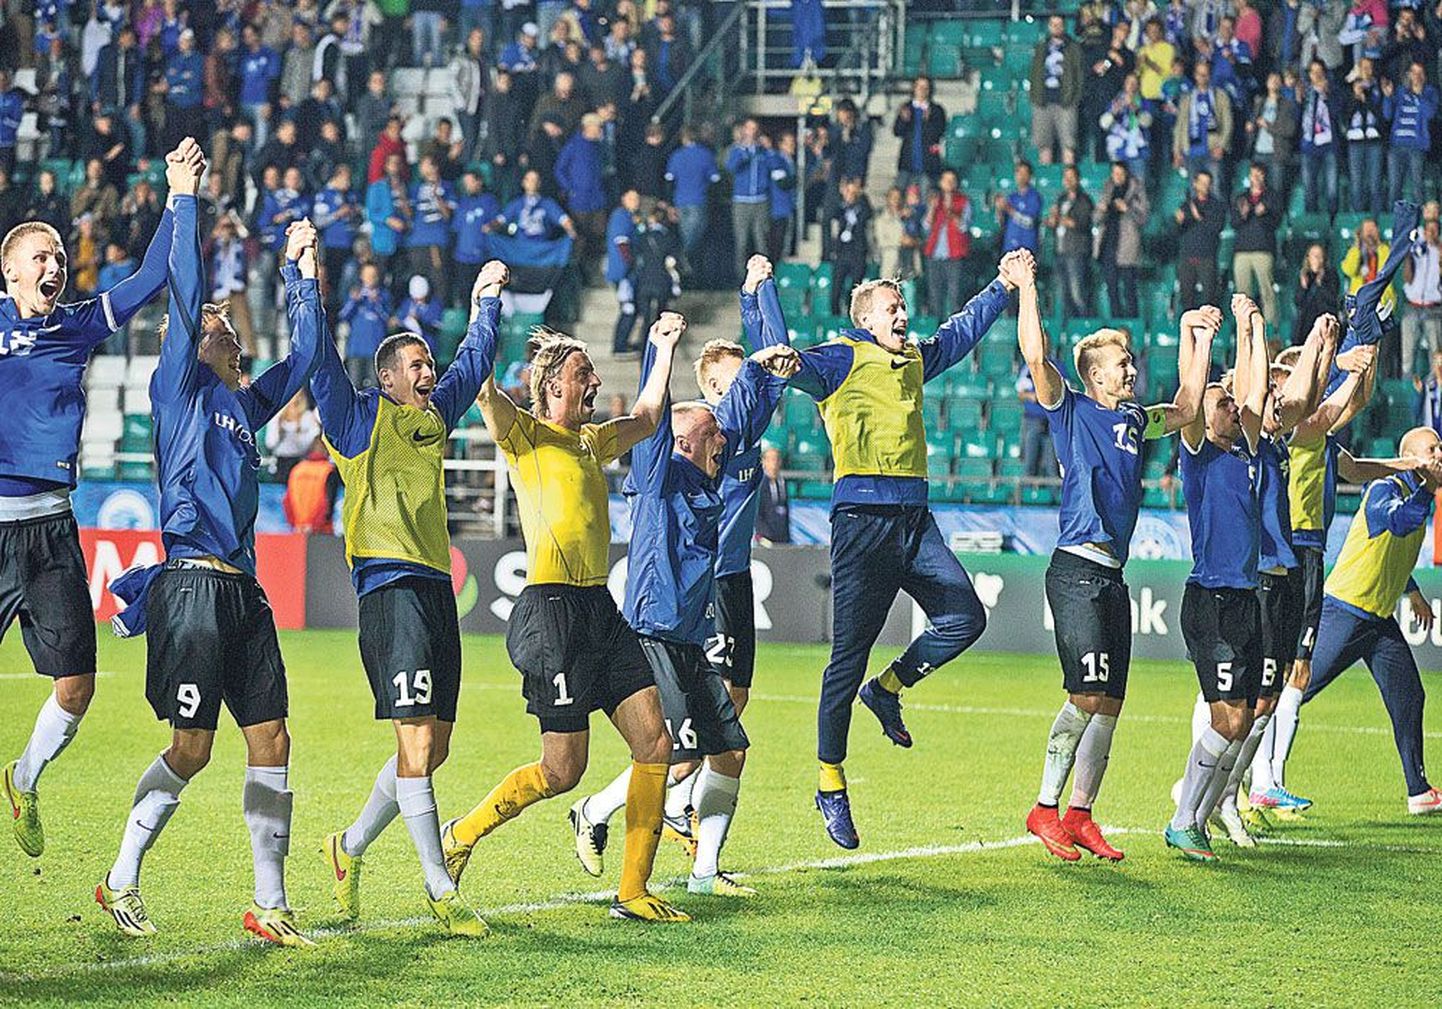 Сборная Эстонии по футболу, одержавшая великолепную победу над командой Словении в отборочном турнире чемпионата Европы, после окончания матча восторженно приветствовала собравшихся на трибунах стадиона Лиллекюла 6500 зрителей.